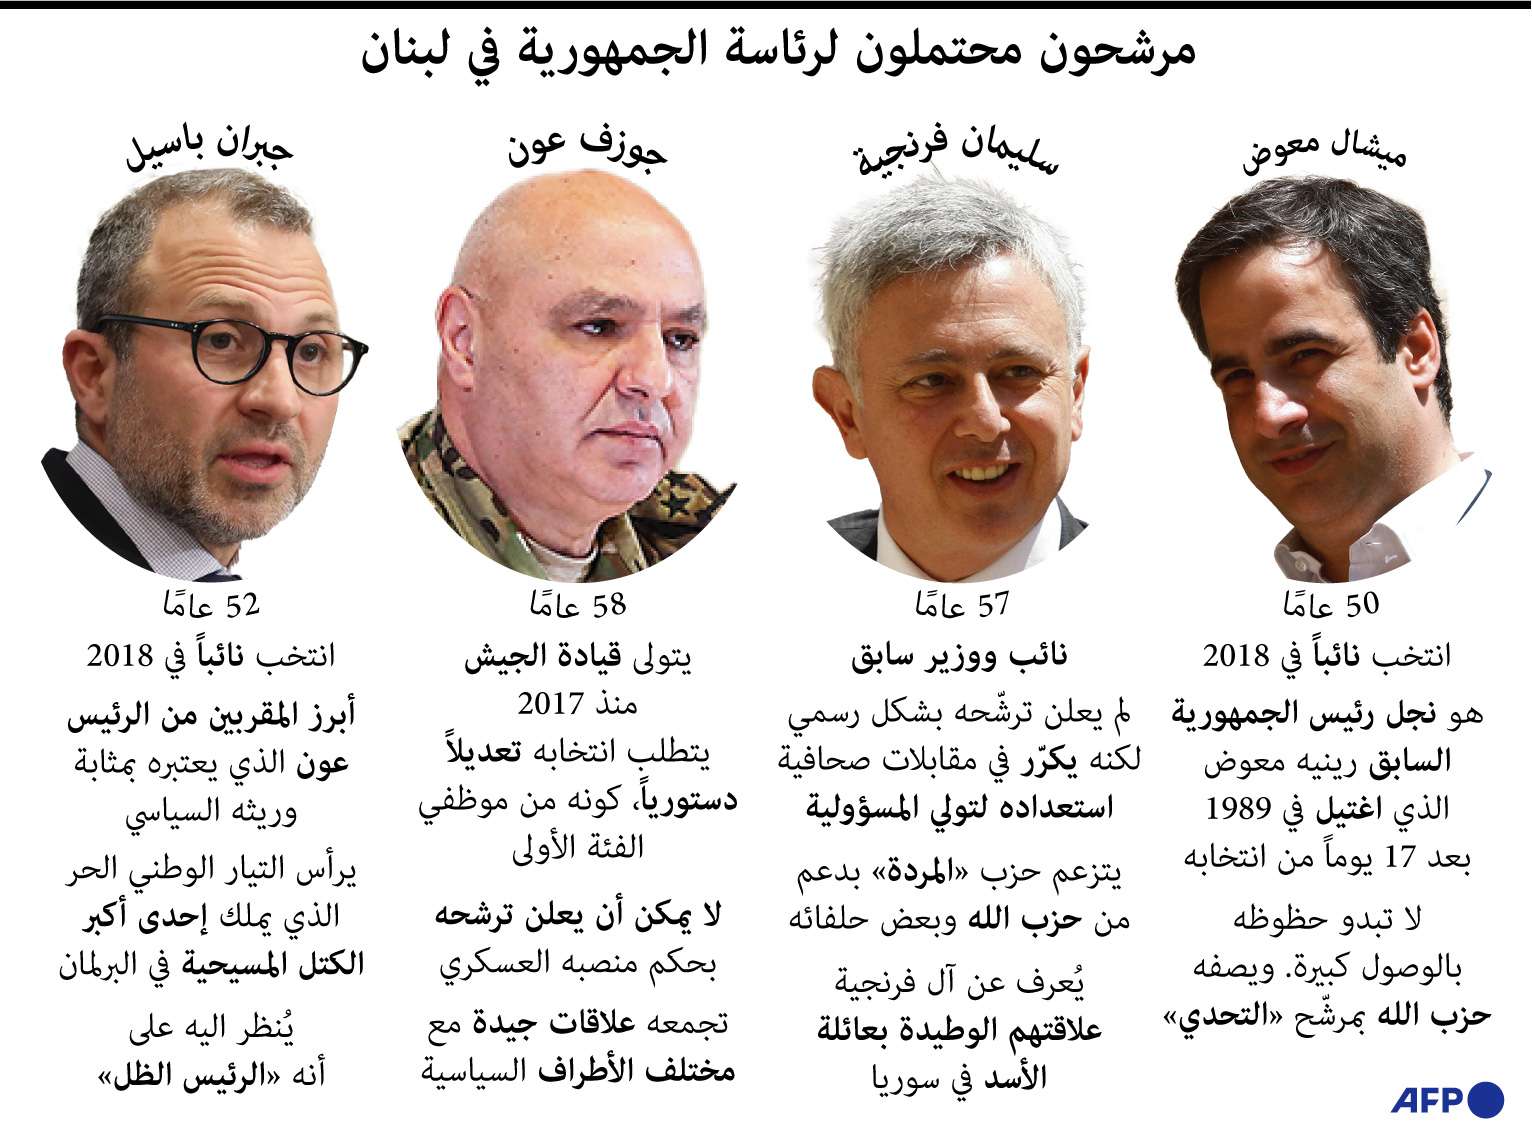 مرشحون محتملون لسباق الرئاسة في لبنان